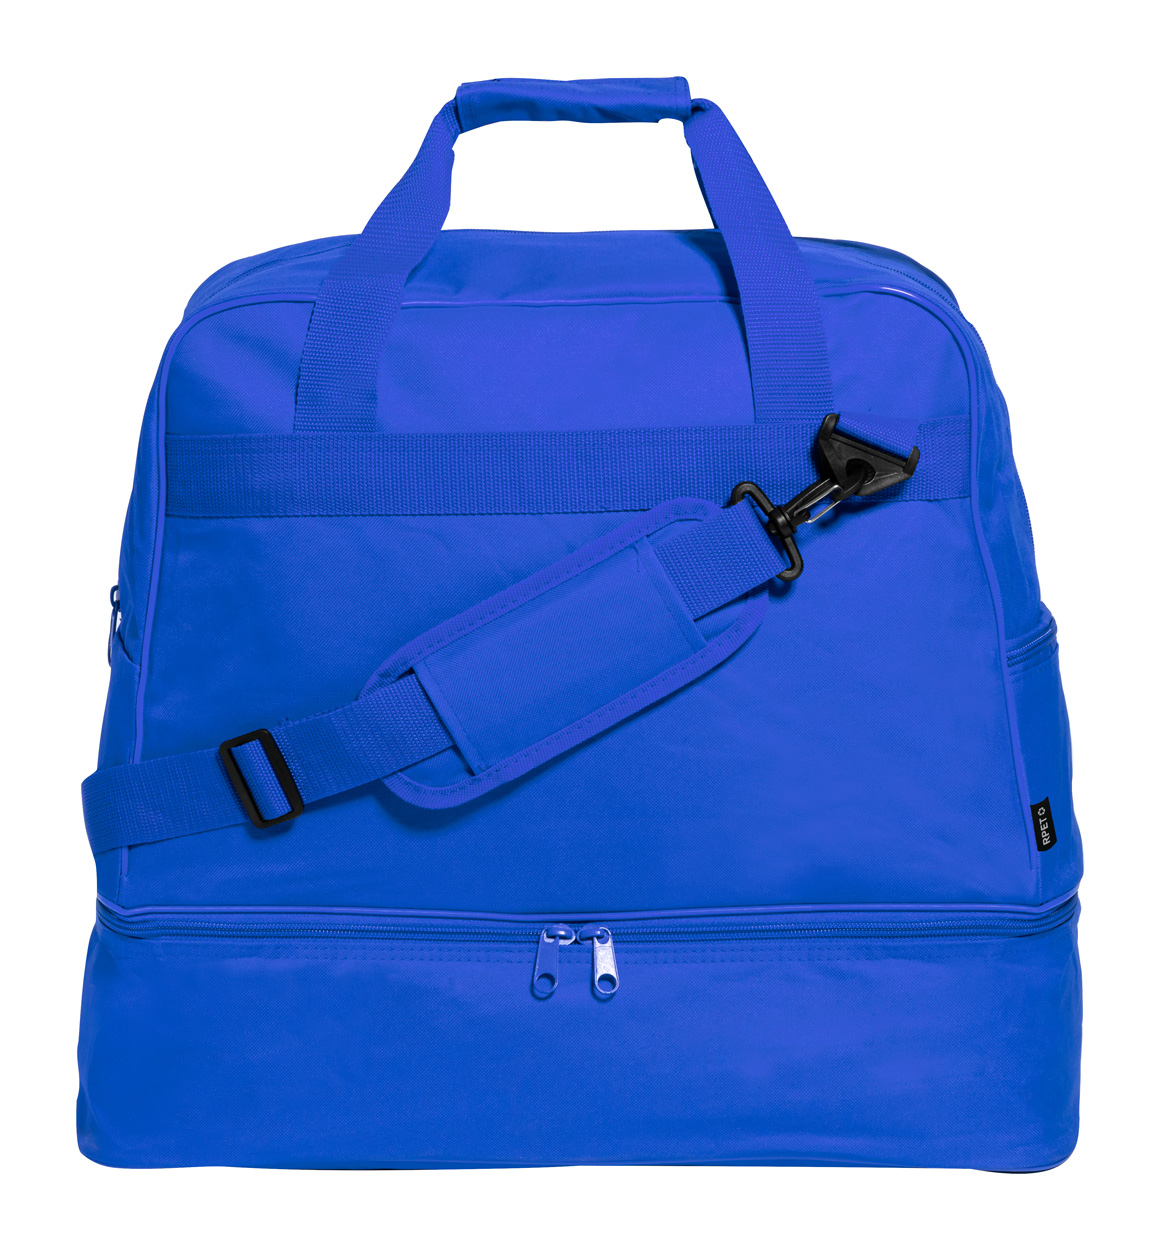 Wistol RPET sportovní taška - modrá